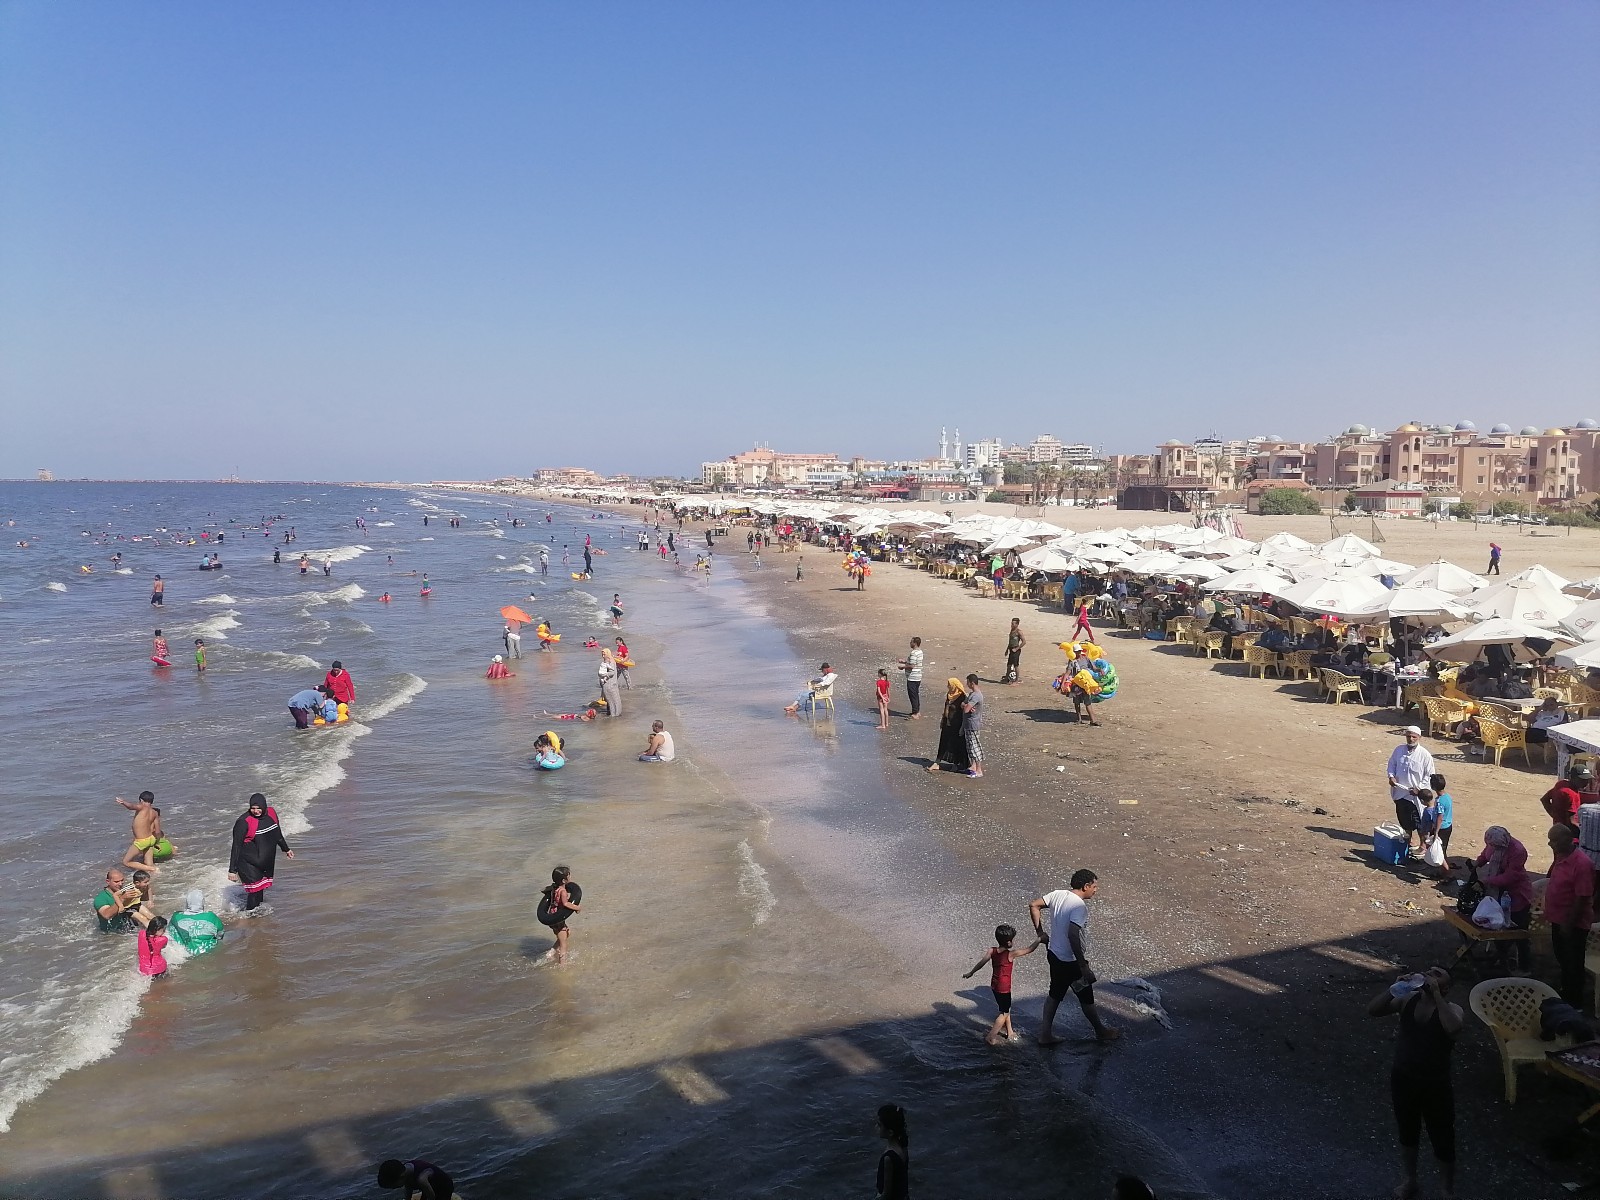 تجمع المئات من الأهالي على شاطئ بورسعيد